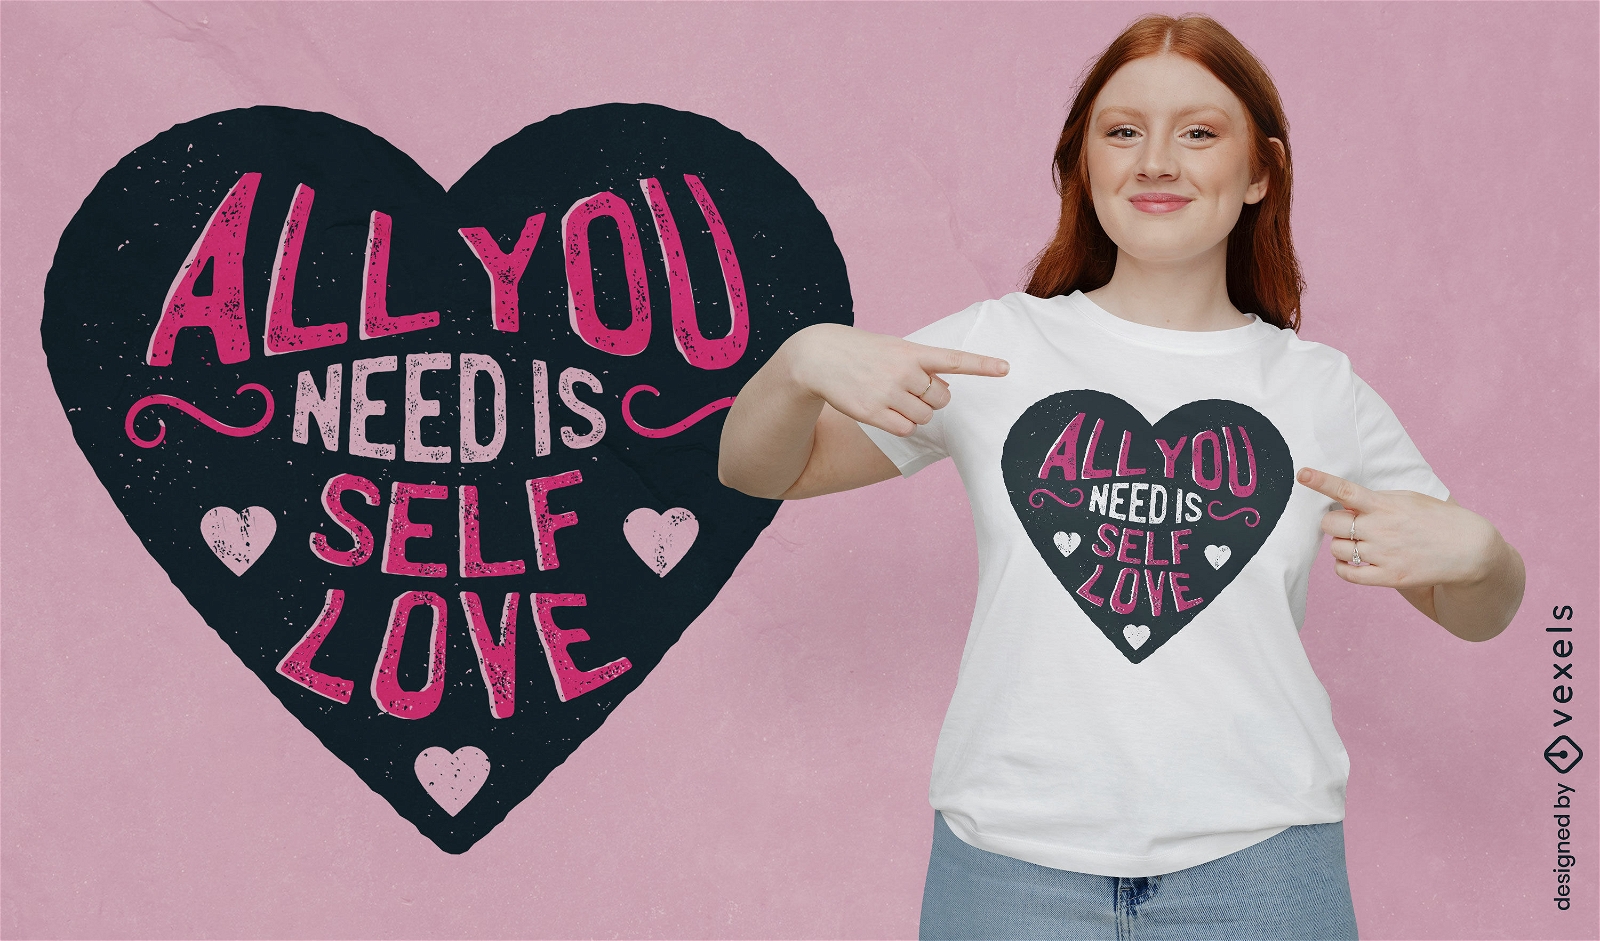 Alles, was Sie brauchen, ist ein Liebes-T-Shirt-Design